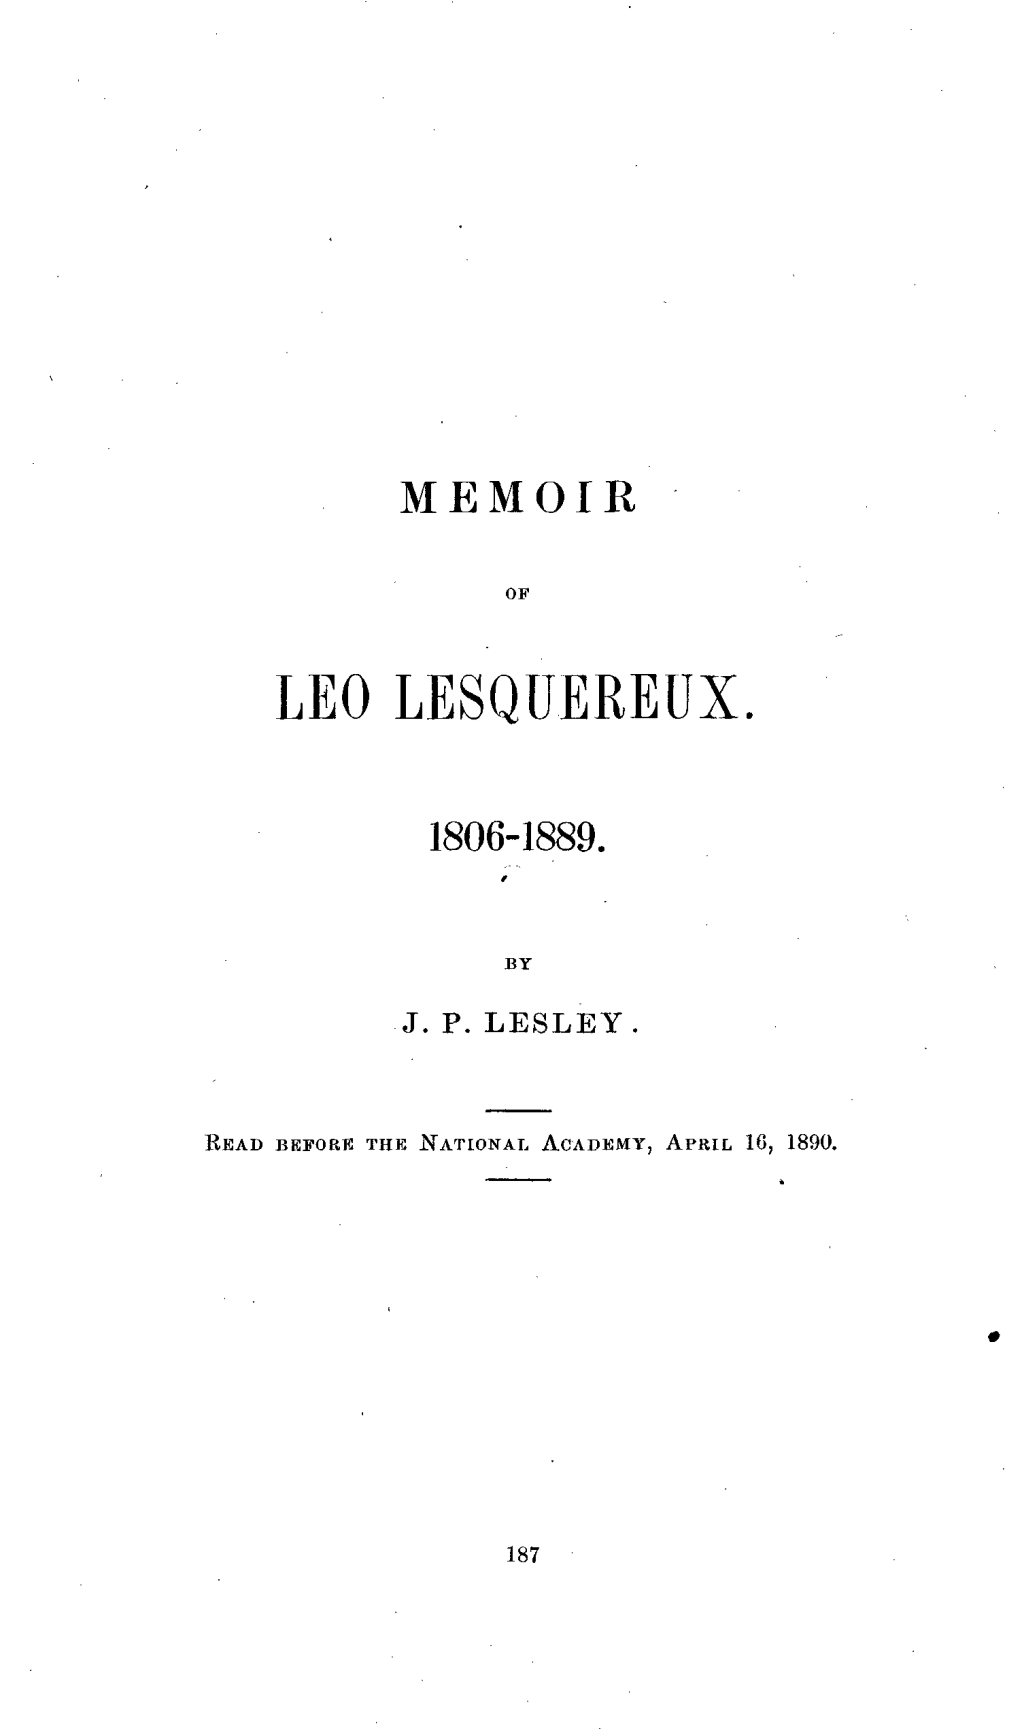 Leo Lesqdereux